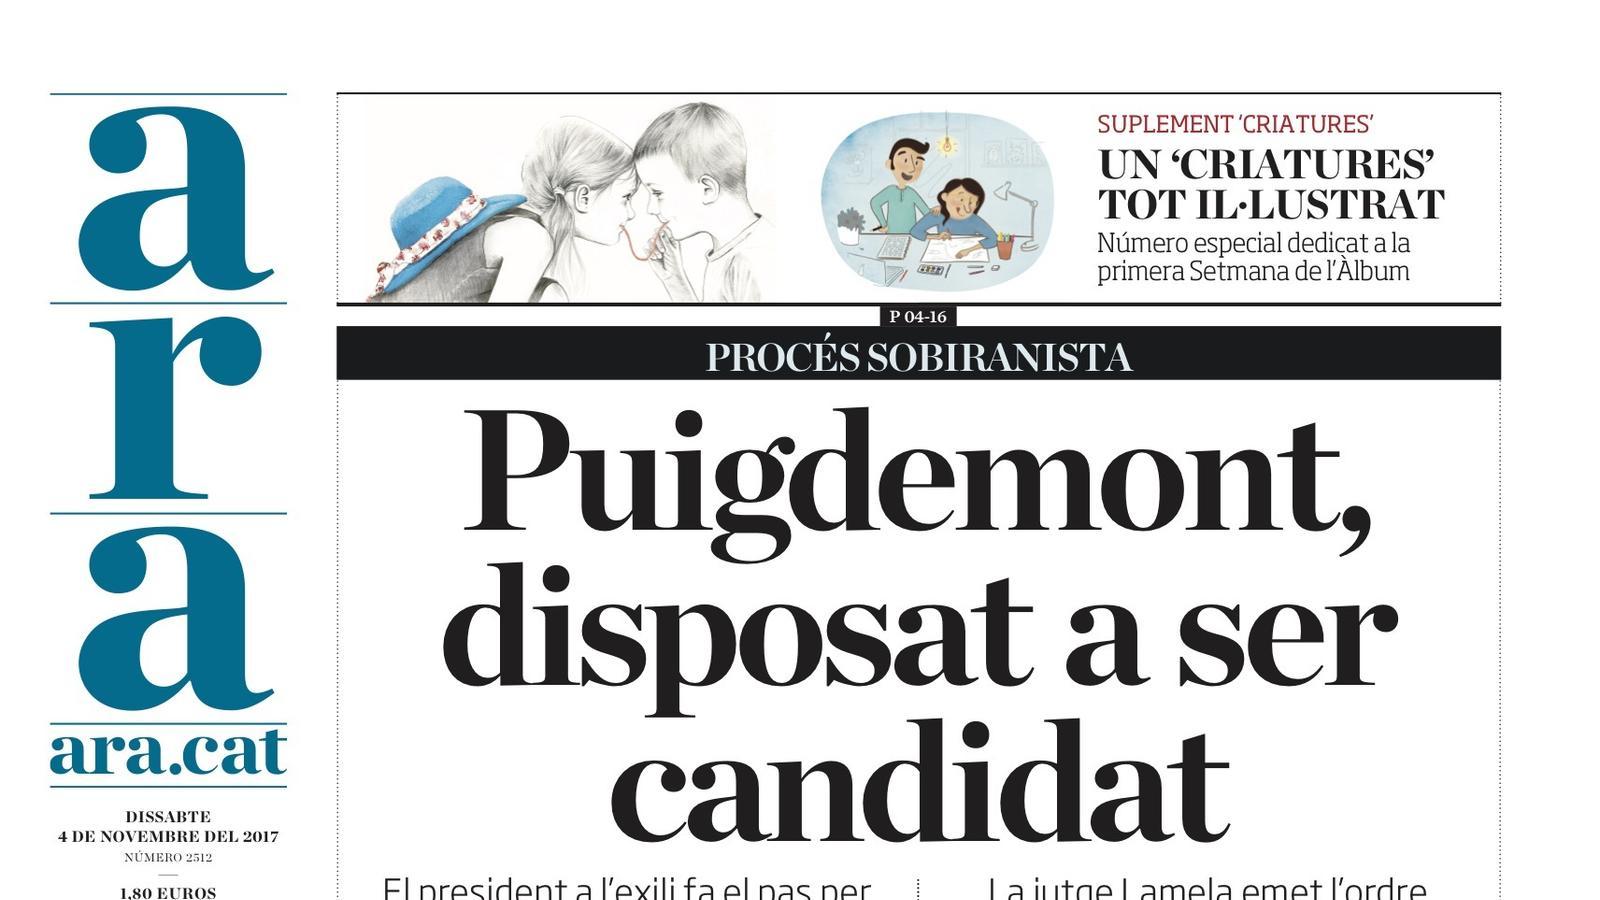 "Puigdemont, disposat a ser candidat", la portada de l'ARA